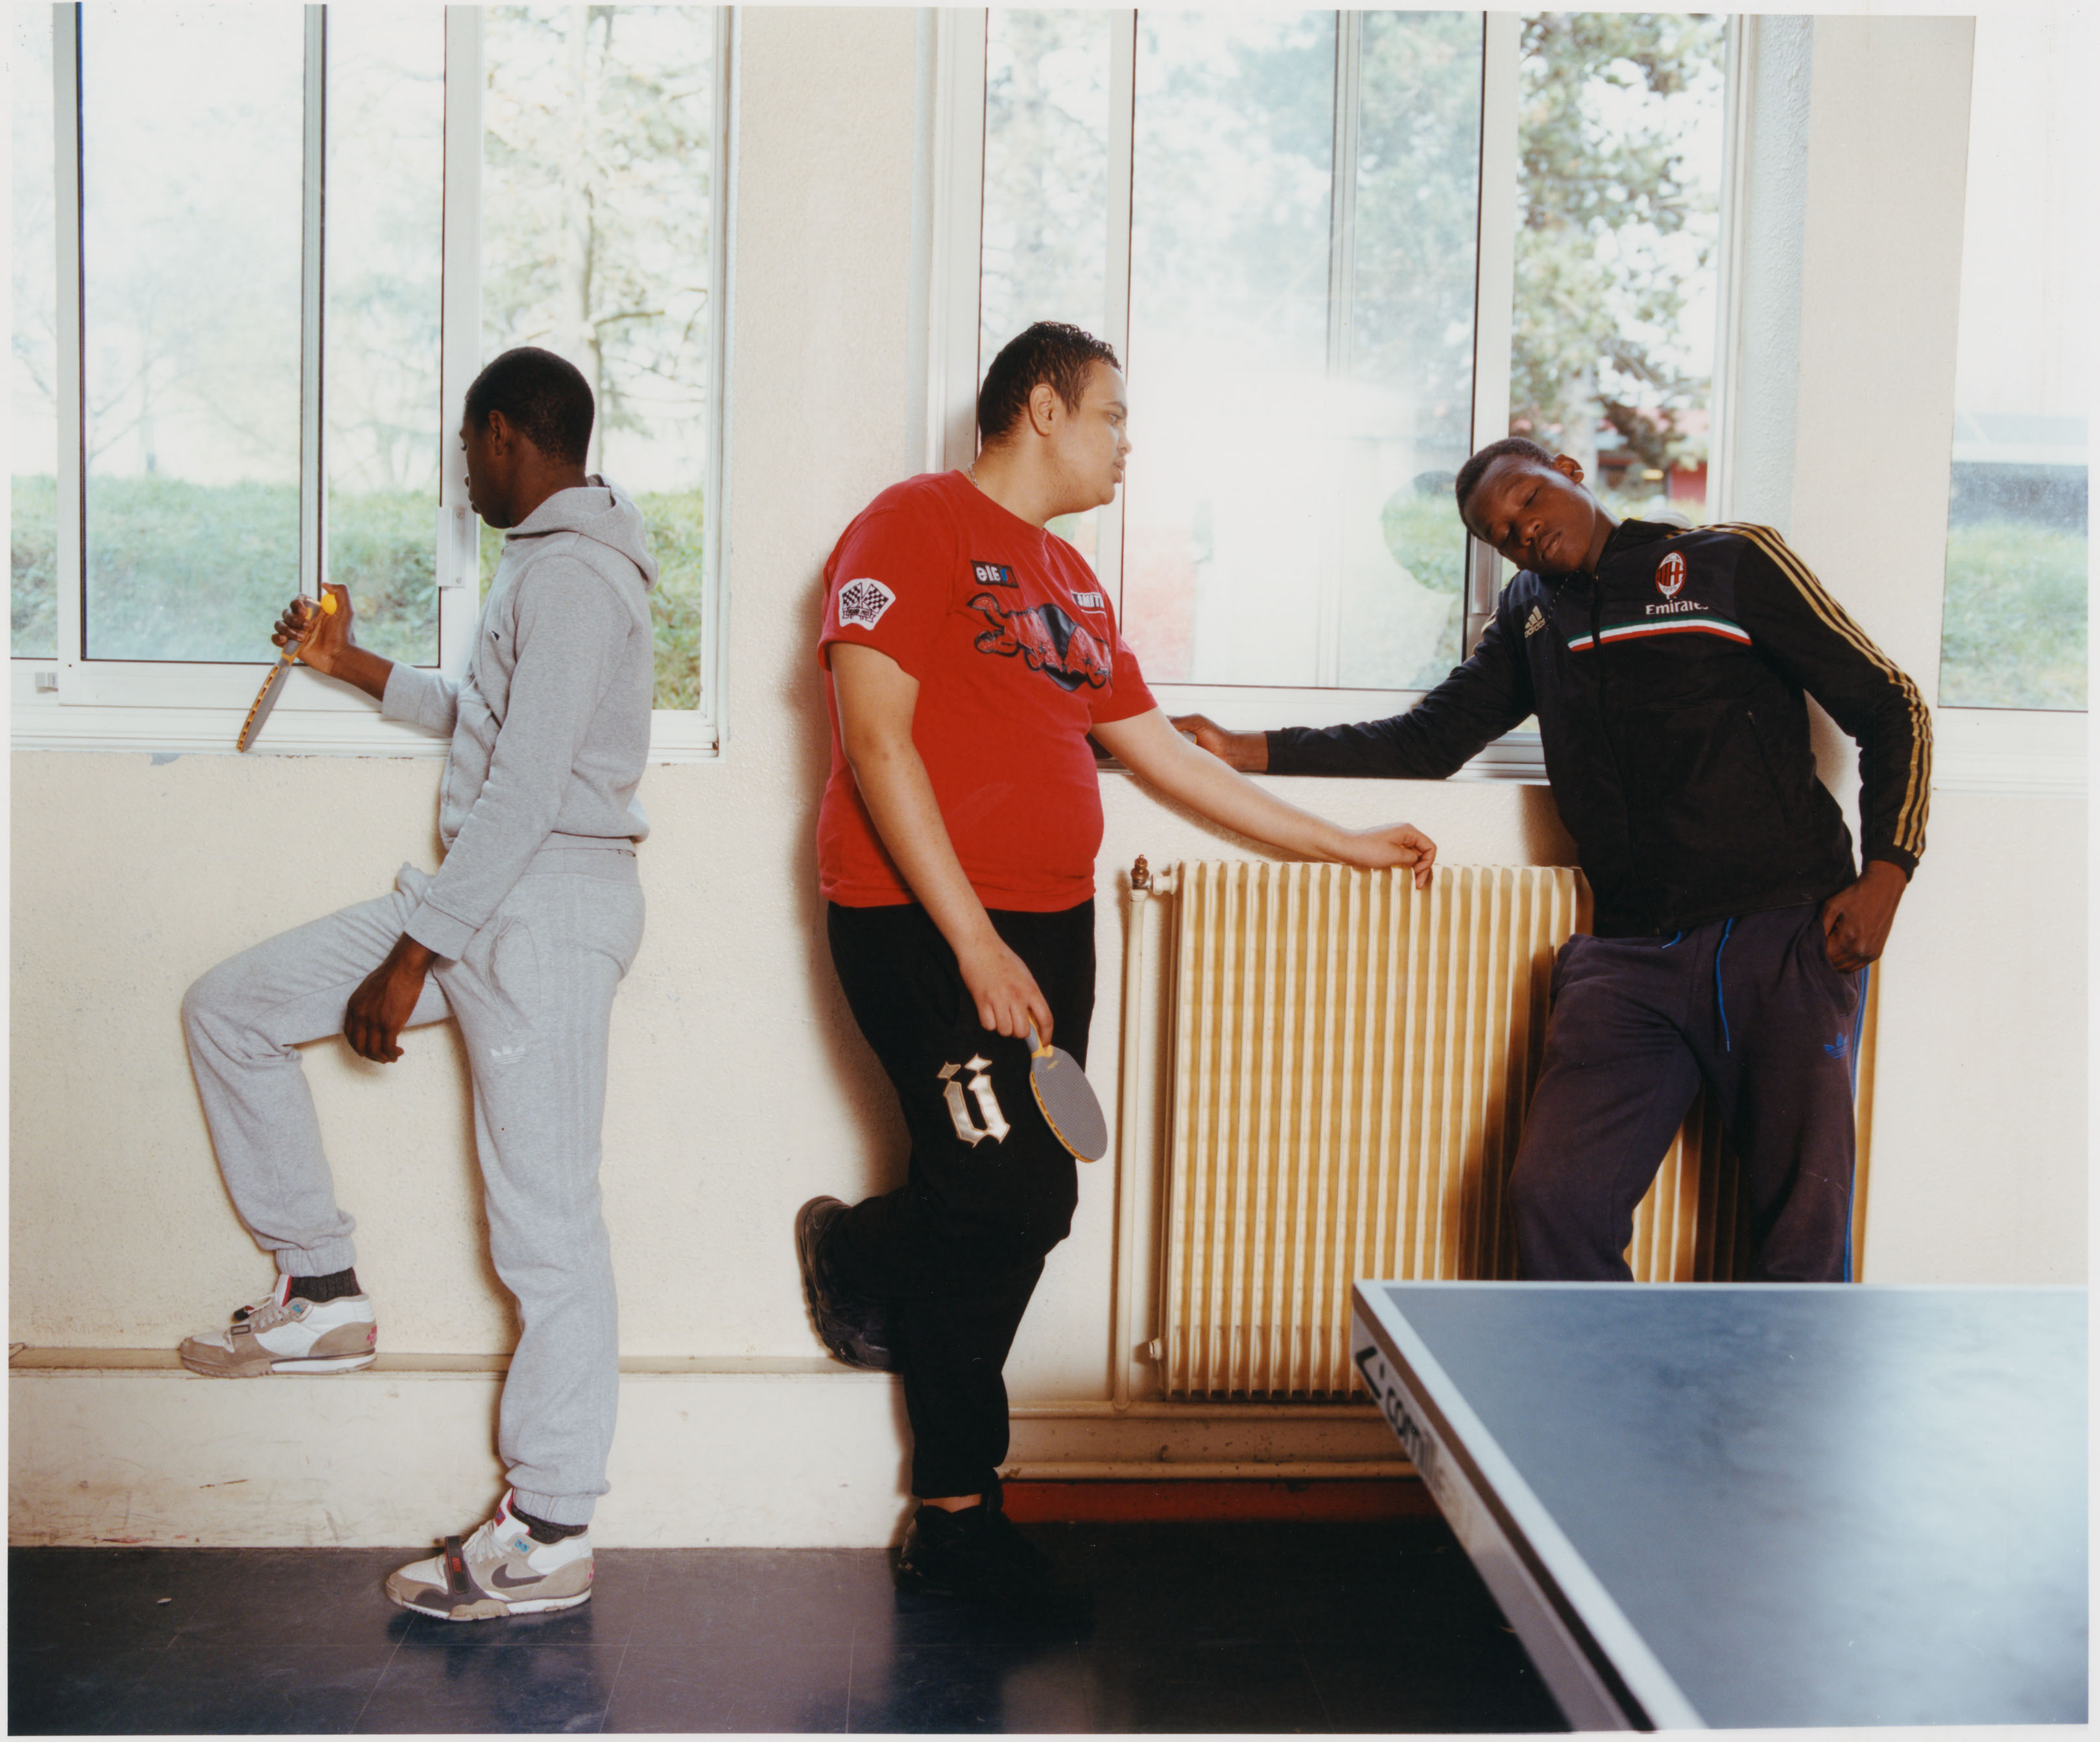 *Ping-pong*, Collège Saint-Exupéry, Rosny Sous Bois (93), 2013 - © Maciek Pożoga